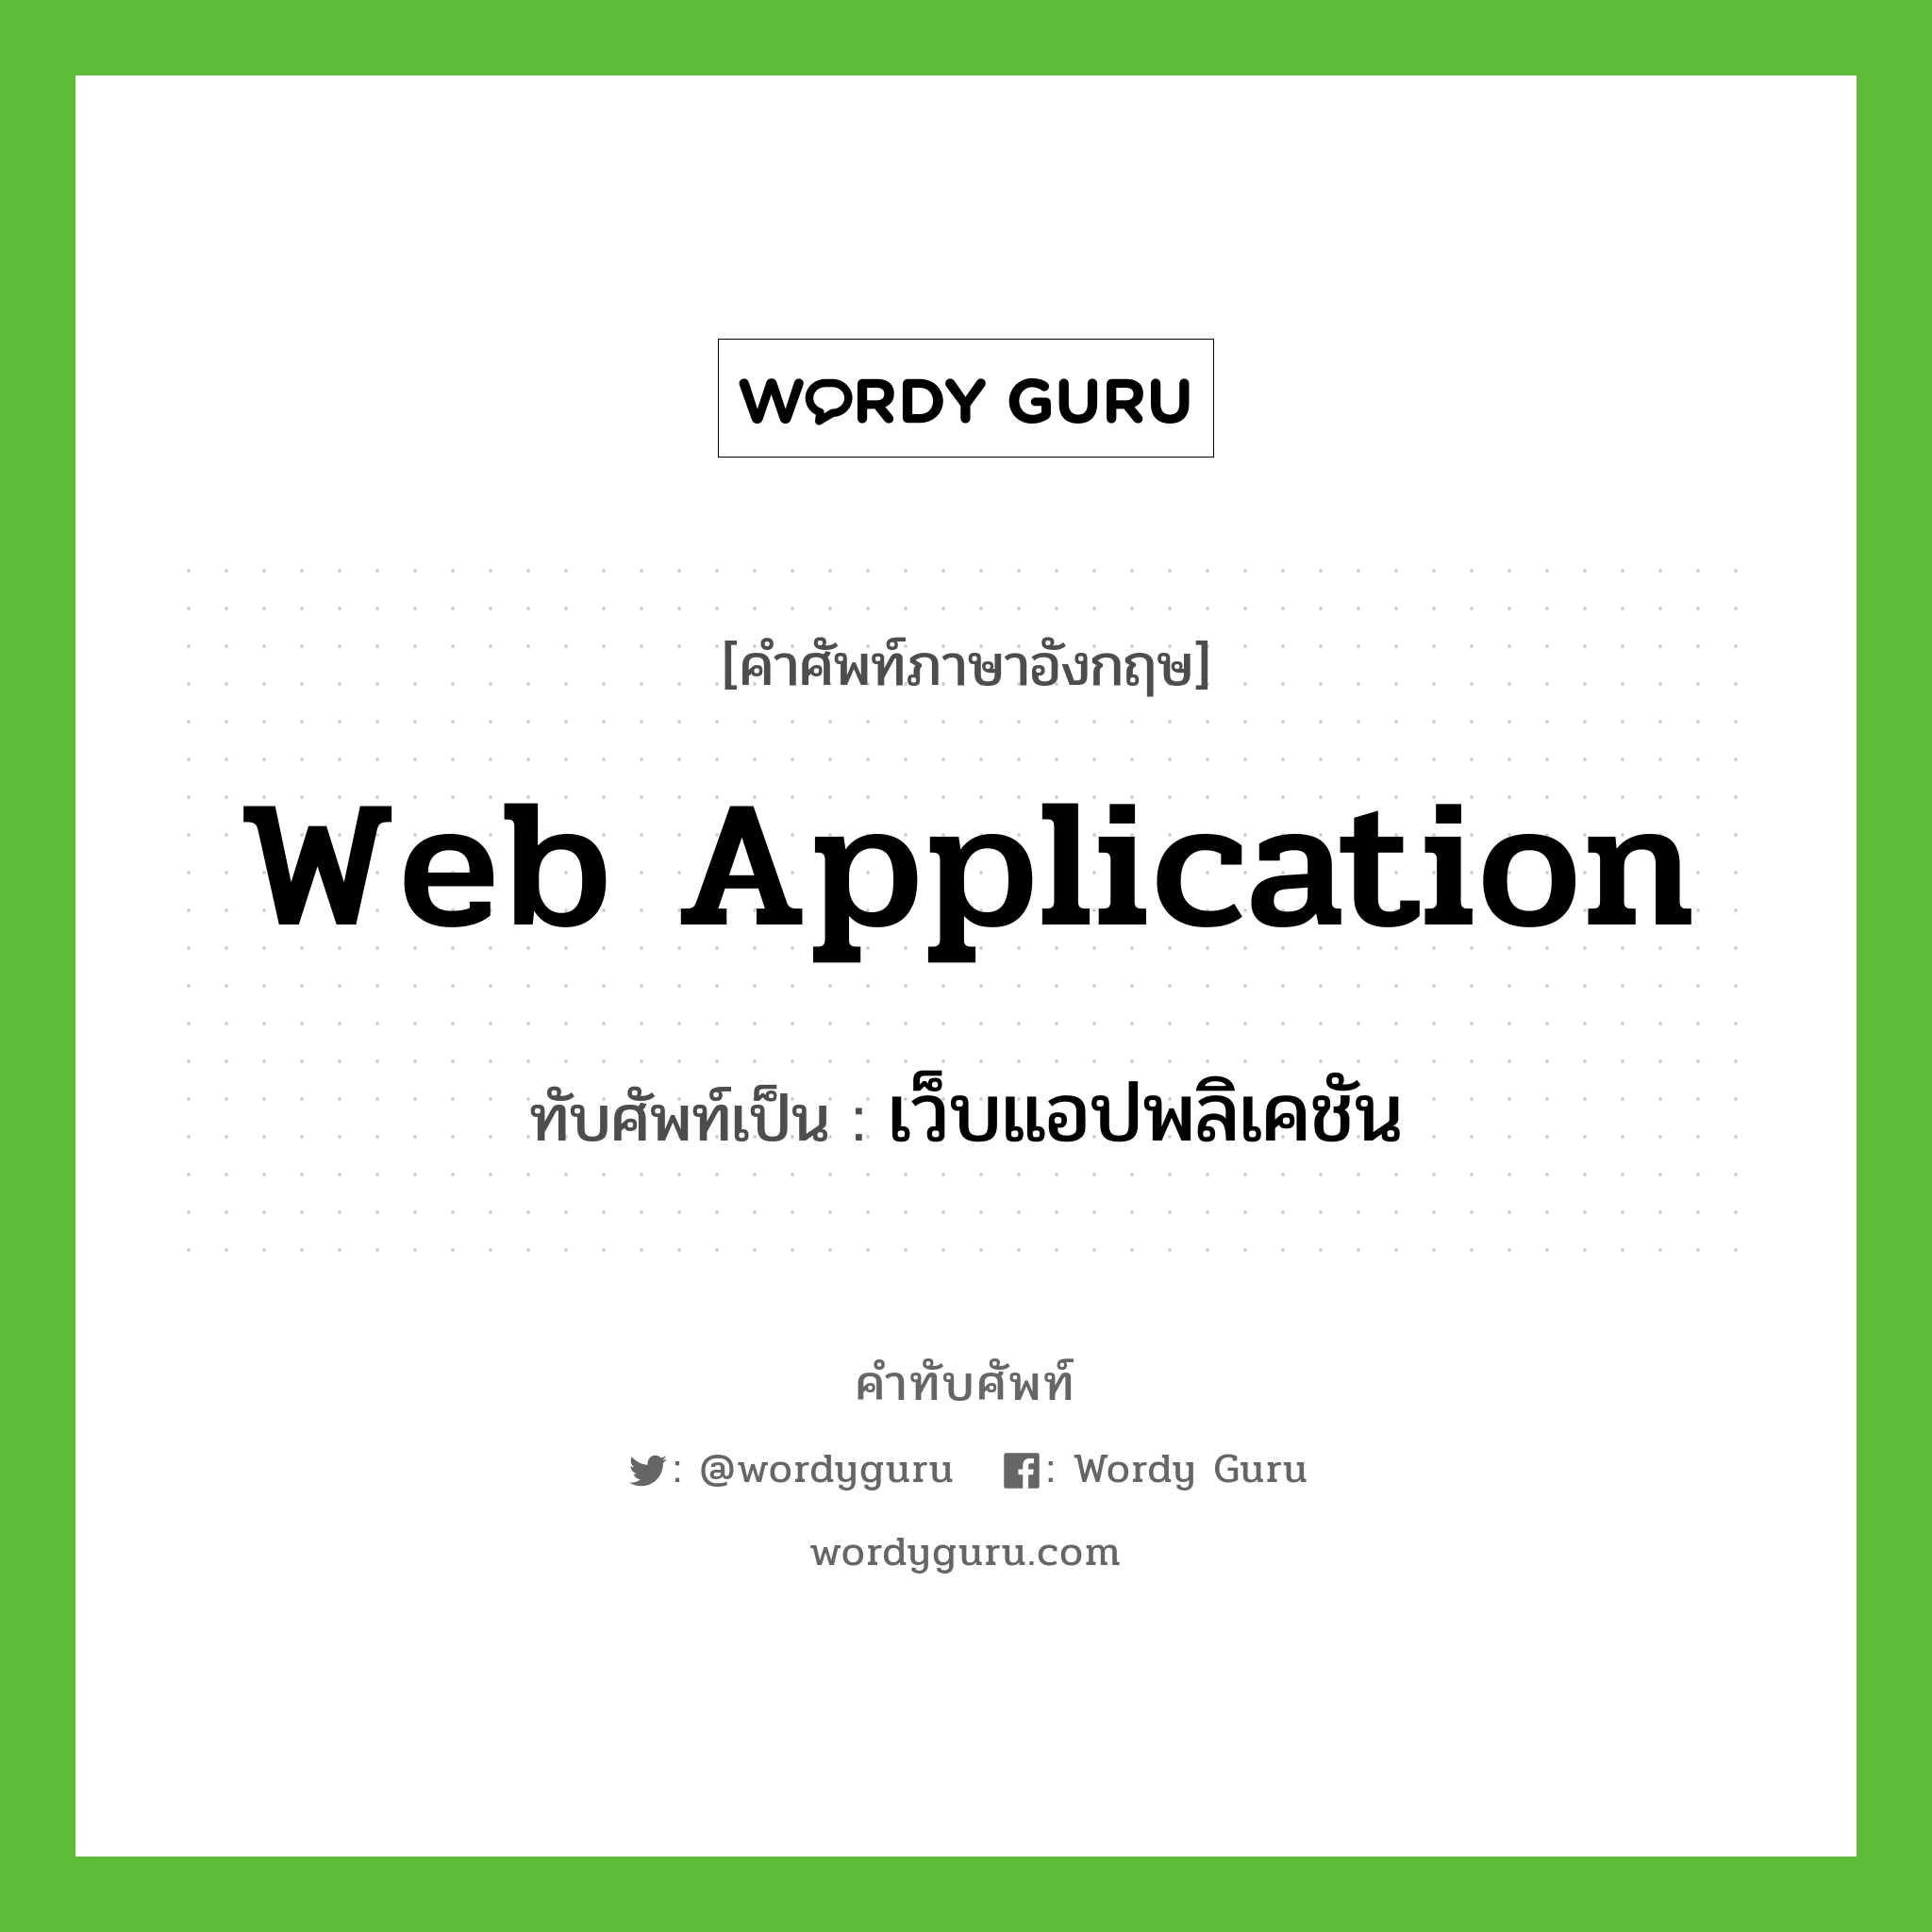 เว็บแอปพลิเคชัน เขียนอย่างไร?, คำศัพท์ภาษาอังกฤษ เว็บแอปพลิเคชัน ทับศัพท์เป็น web application